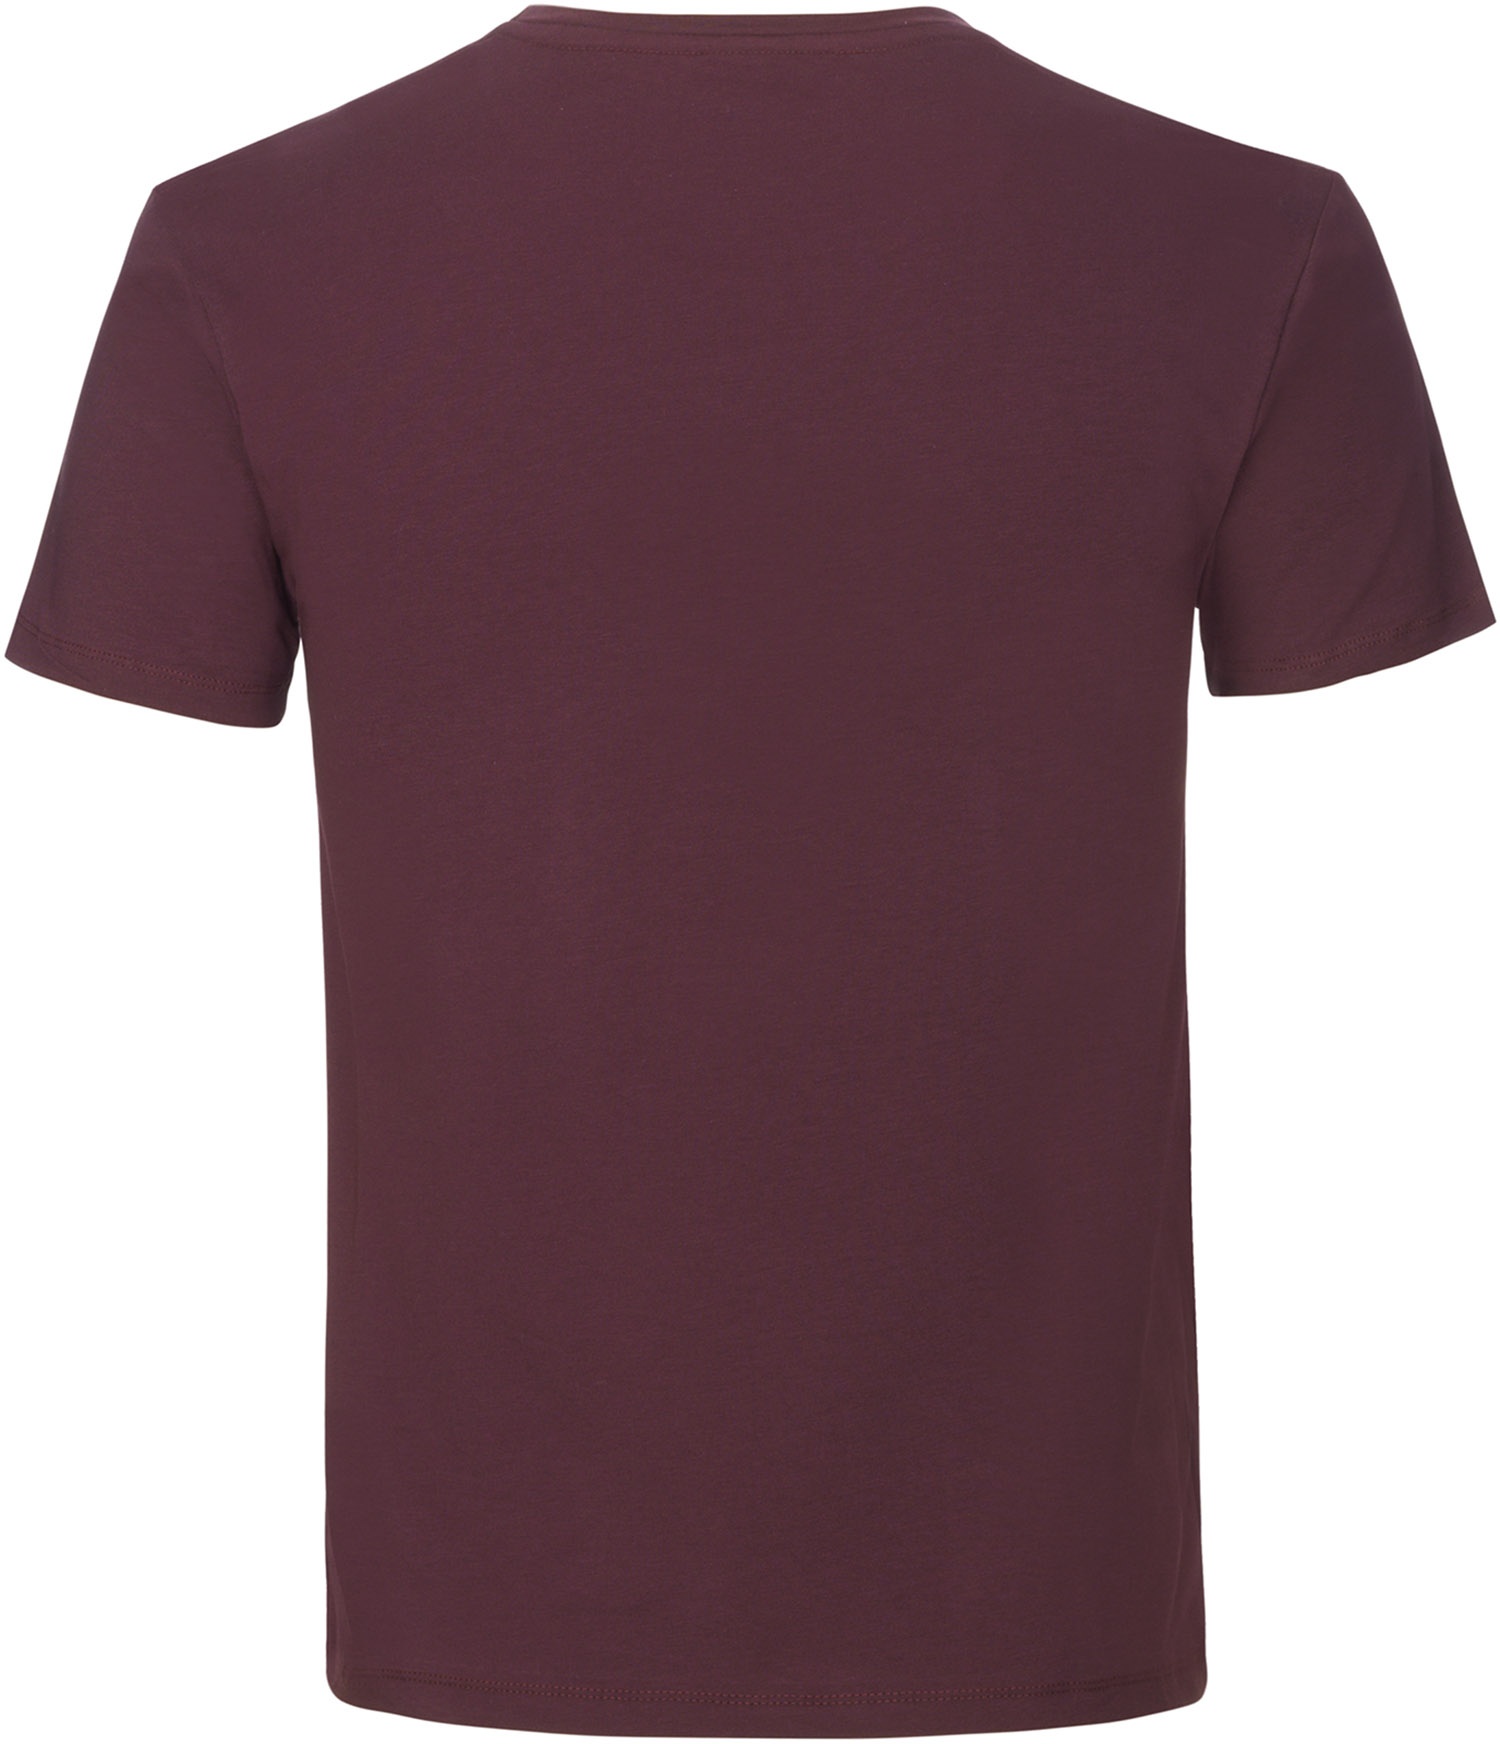 Beklædning - Merchandise - GripGrab Racing Stripe Kortærmet Økologisk Bomulds-T-shirt - Mørk Rød